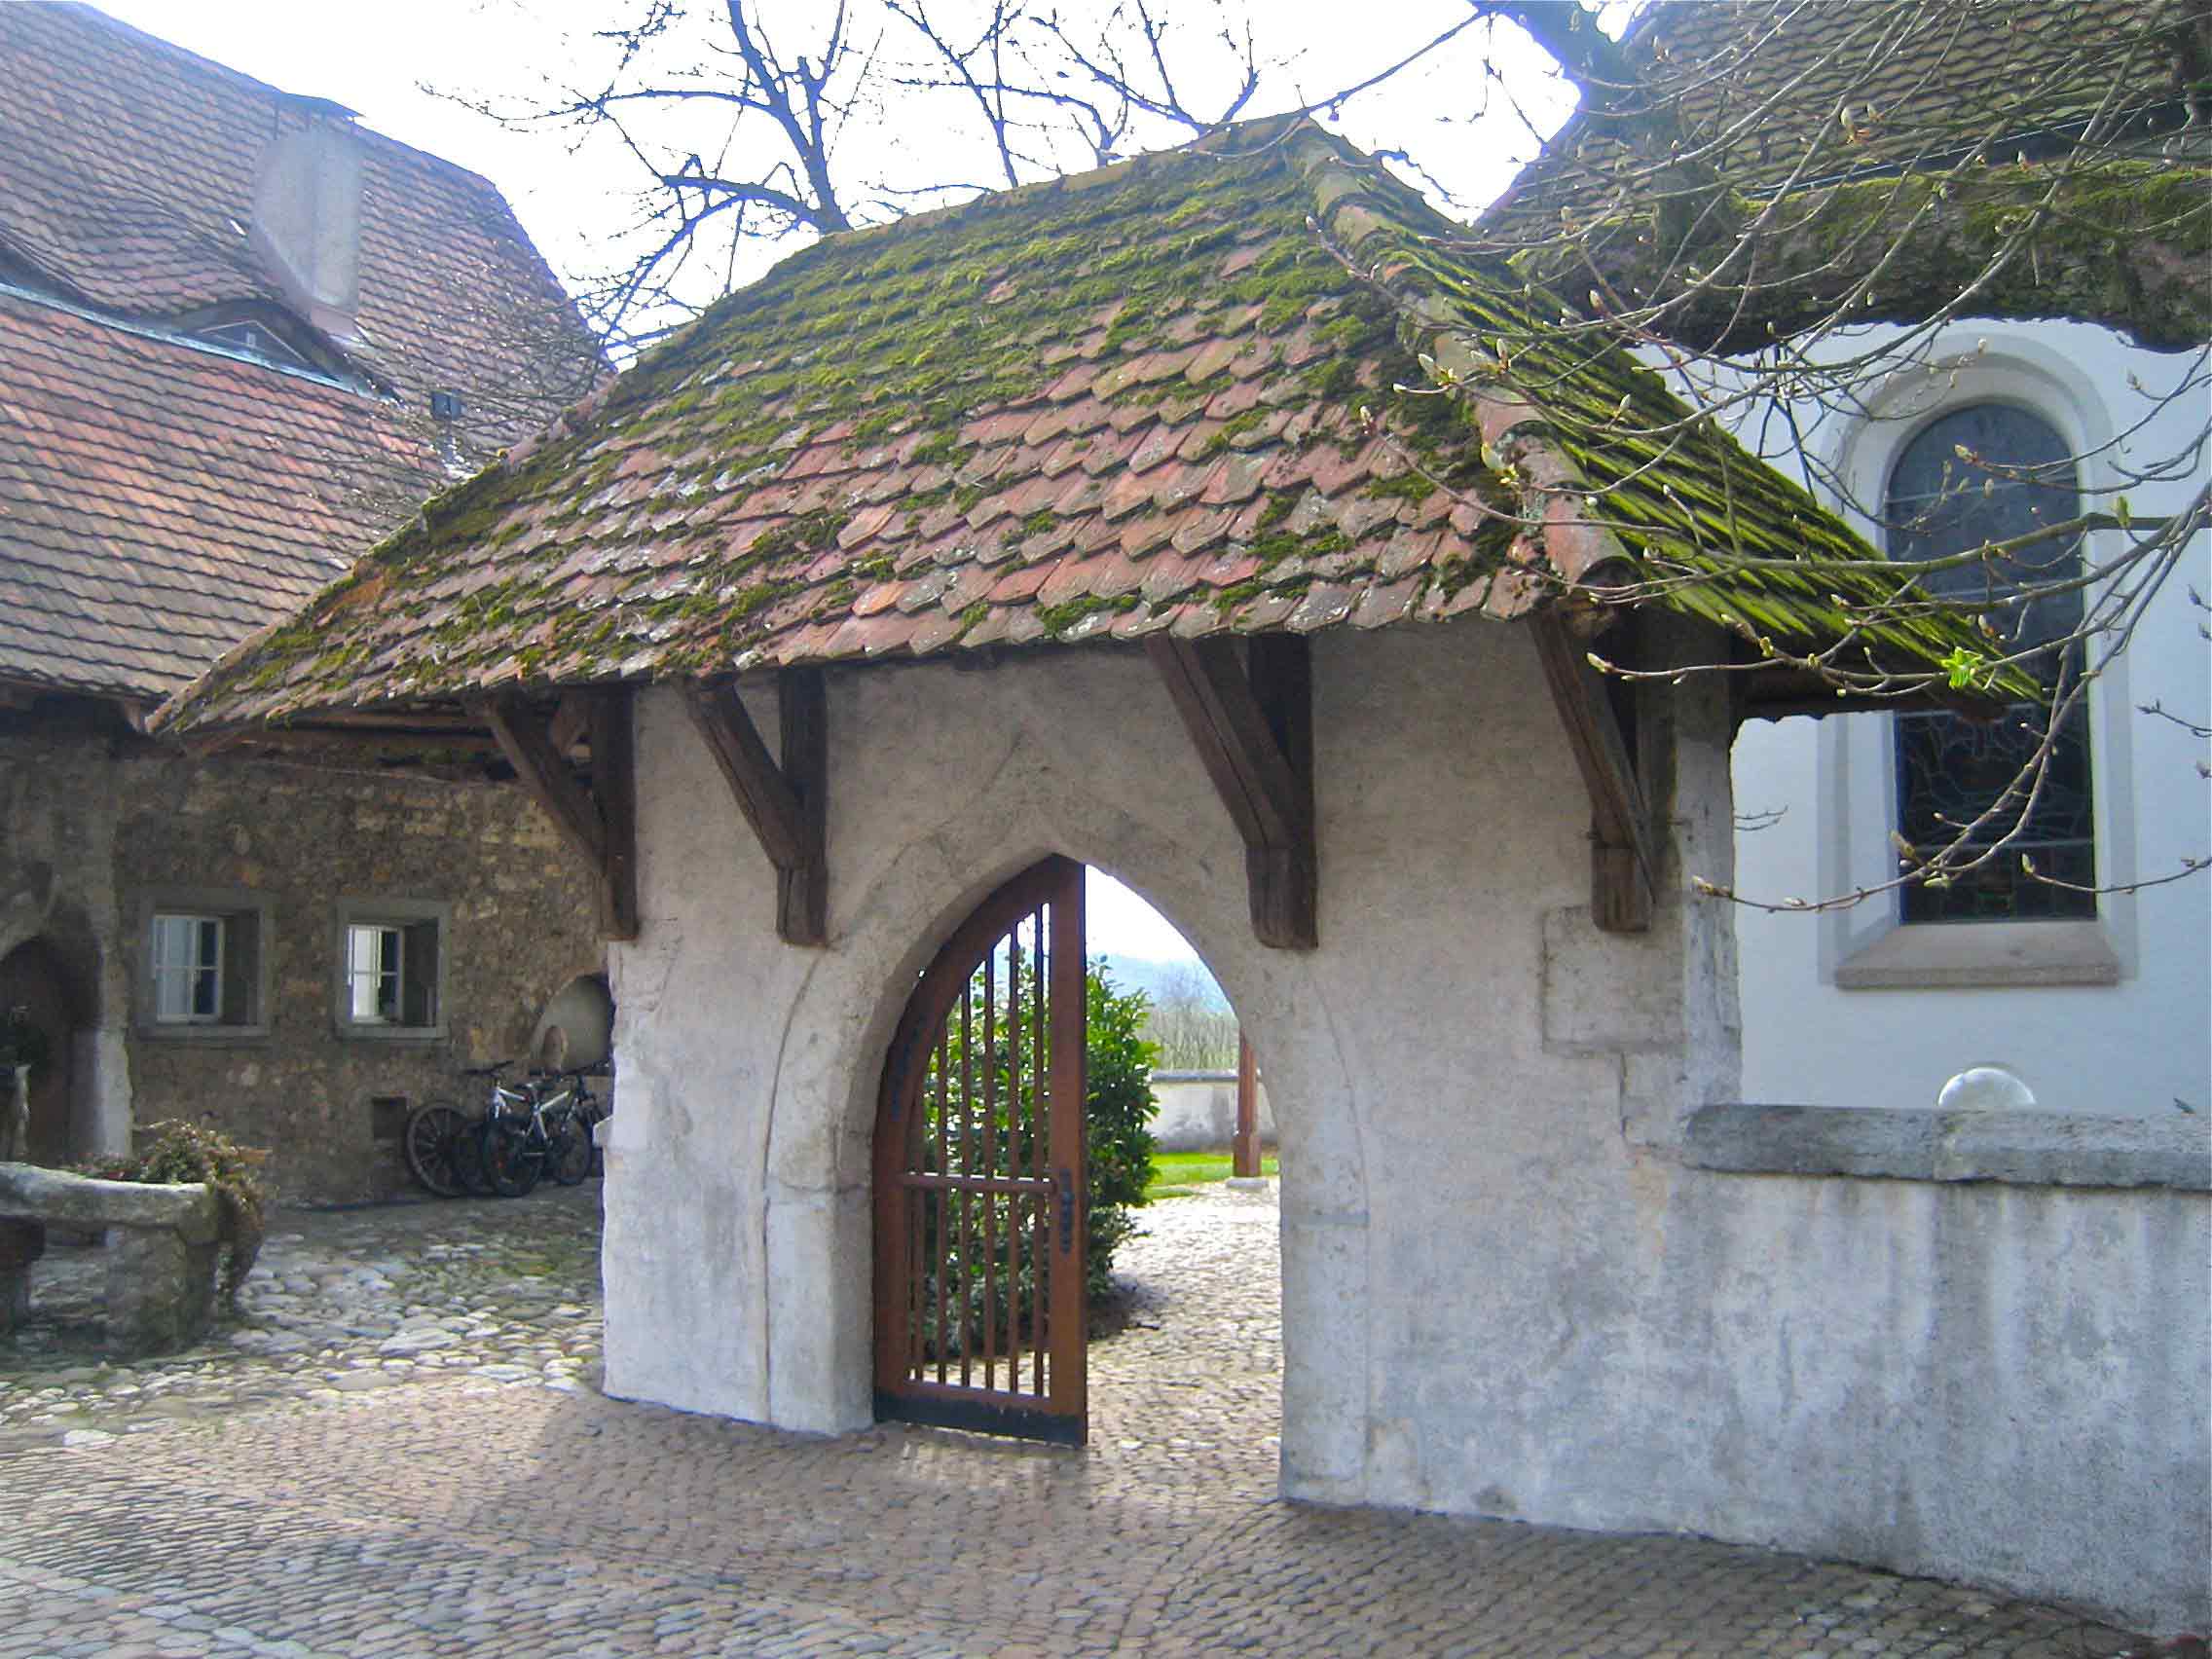 Lichgate, Niederbipp Church - Überdachtes Tor zum Hof der Kirche Niederbipp